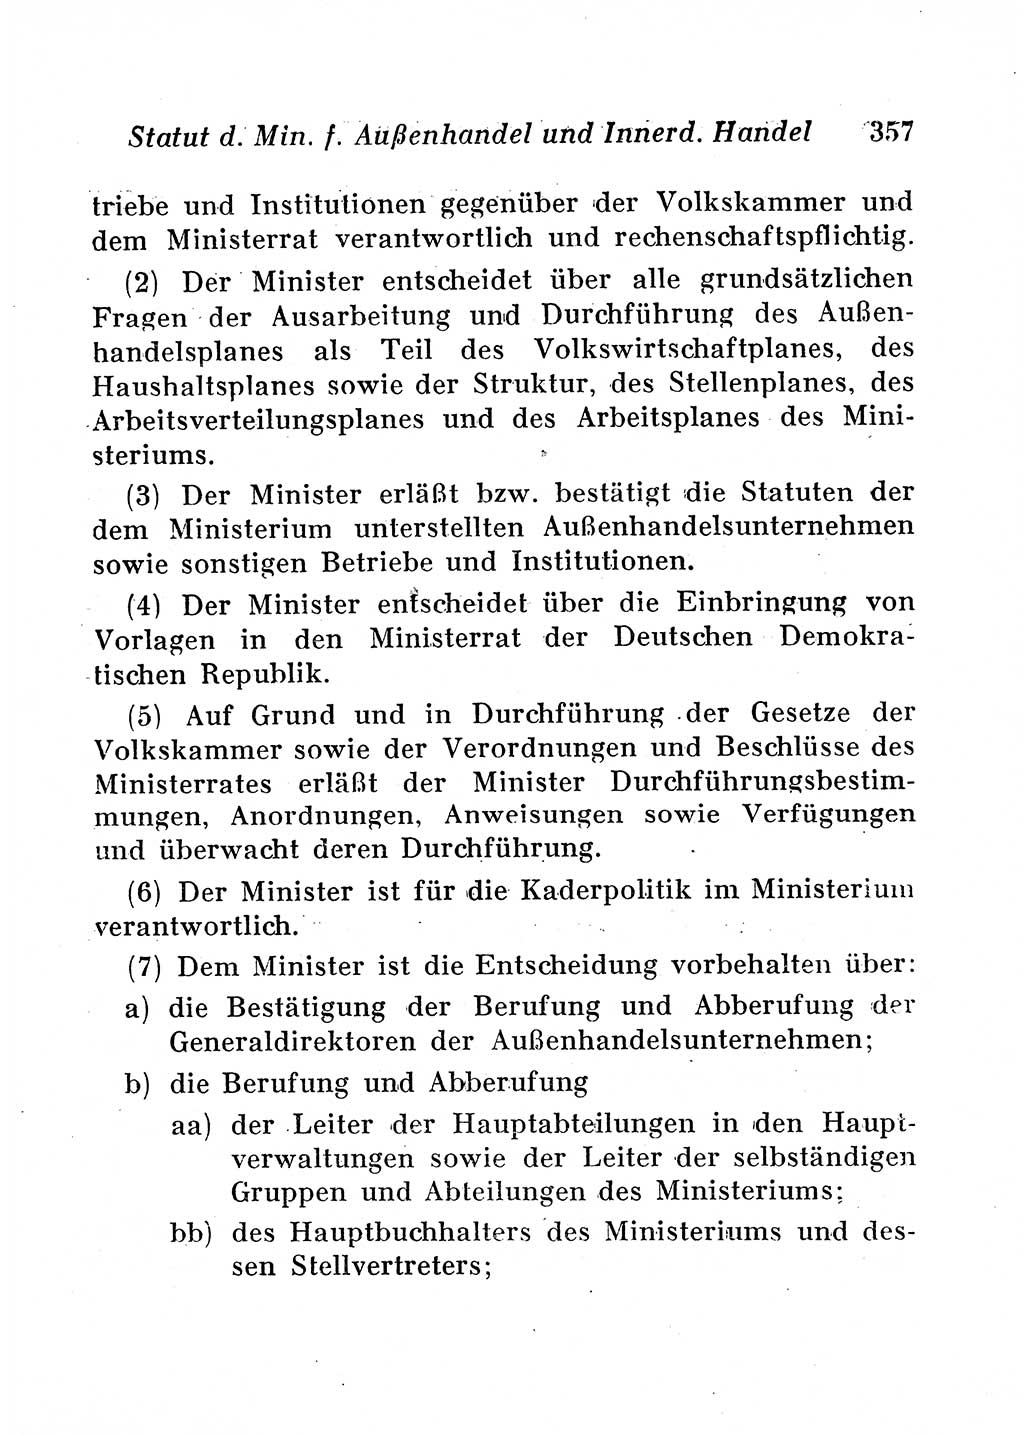 Staats- und verwaltungsrechtliche Gesetze der Deutschen Demokratischen Republik (DDR) 1958, Seite 357 (StVerwR Ges. DDR 1958, S. 357)